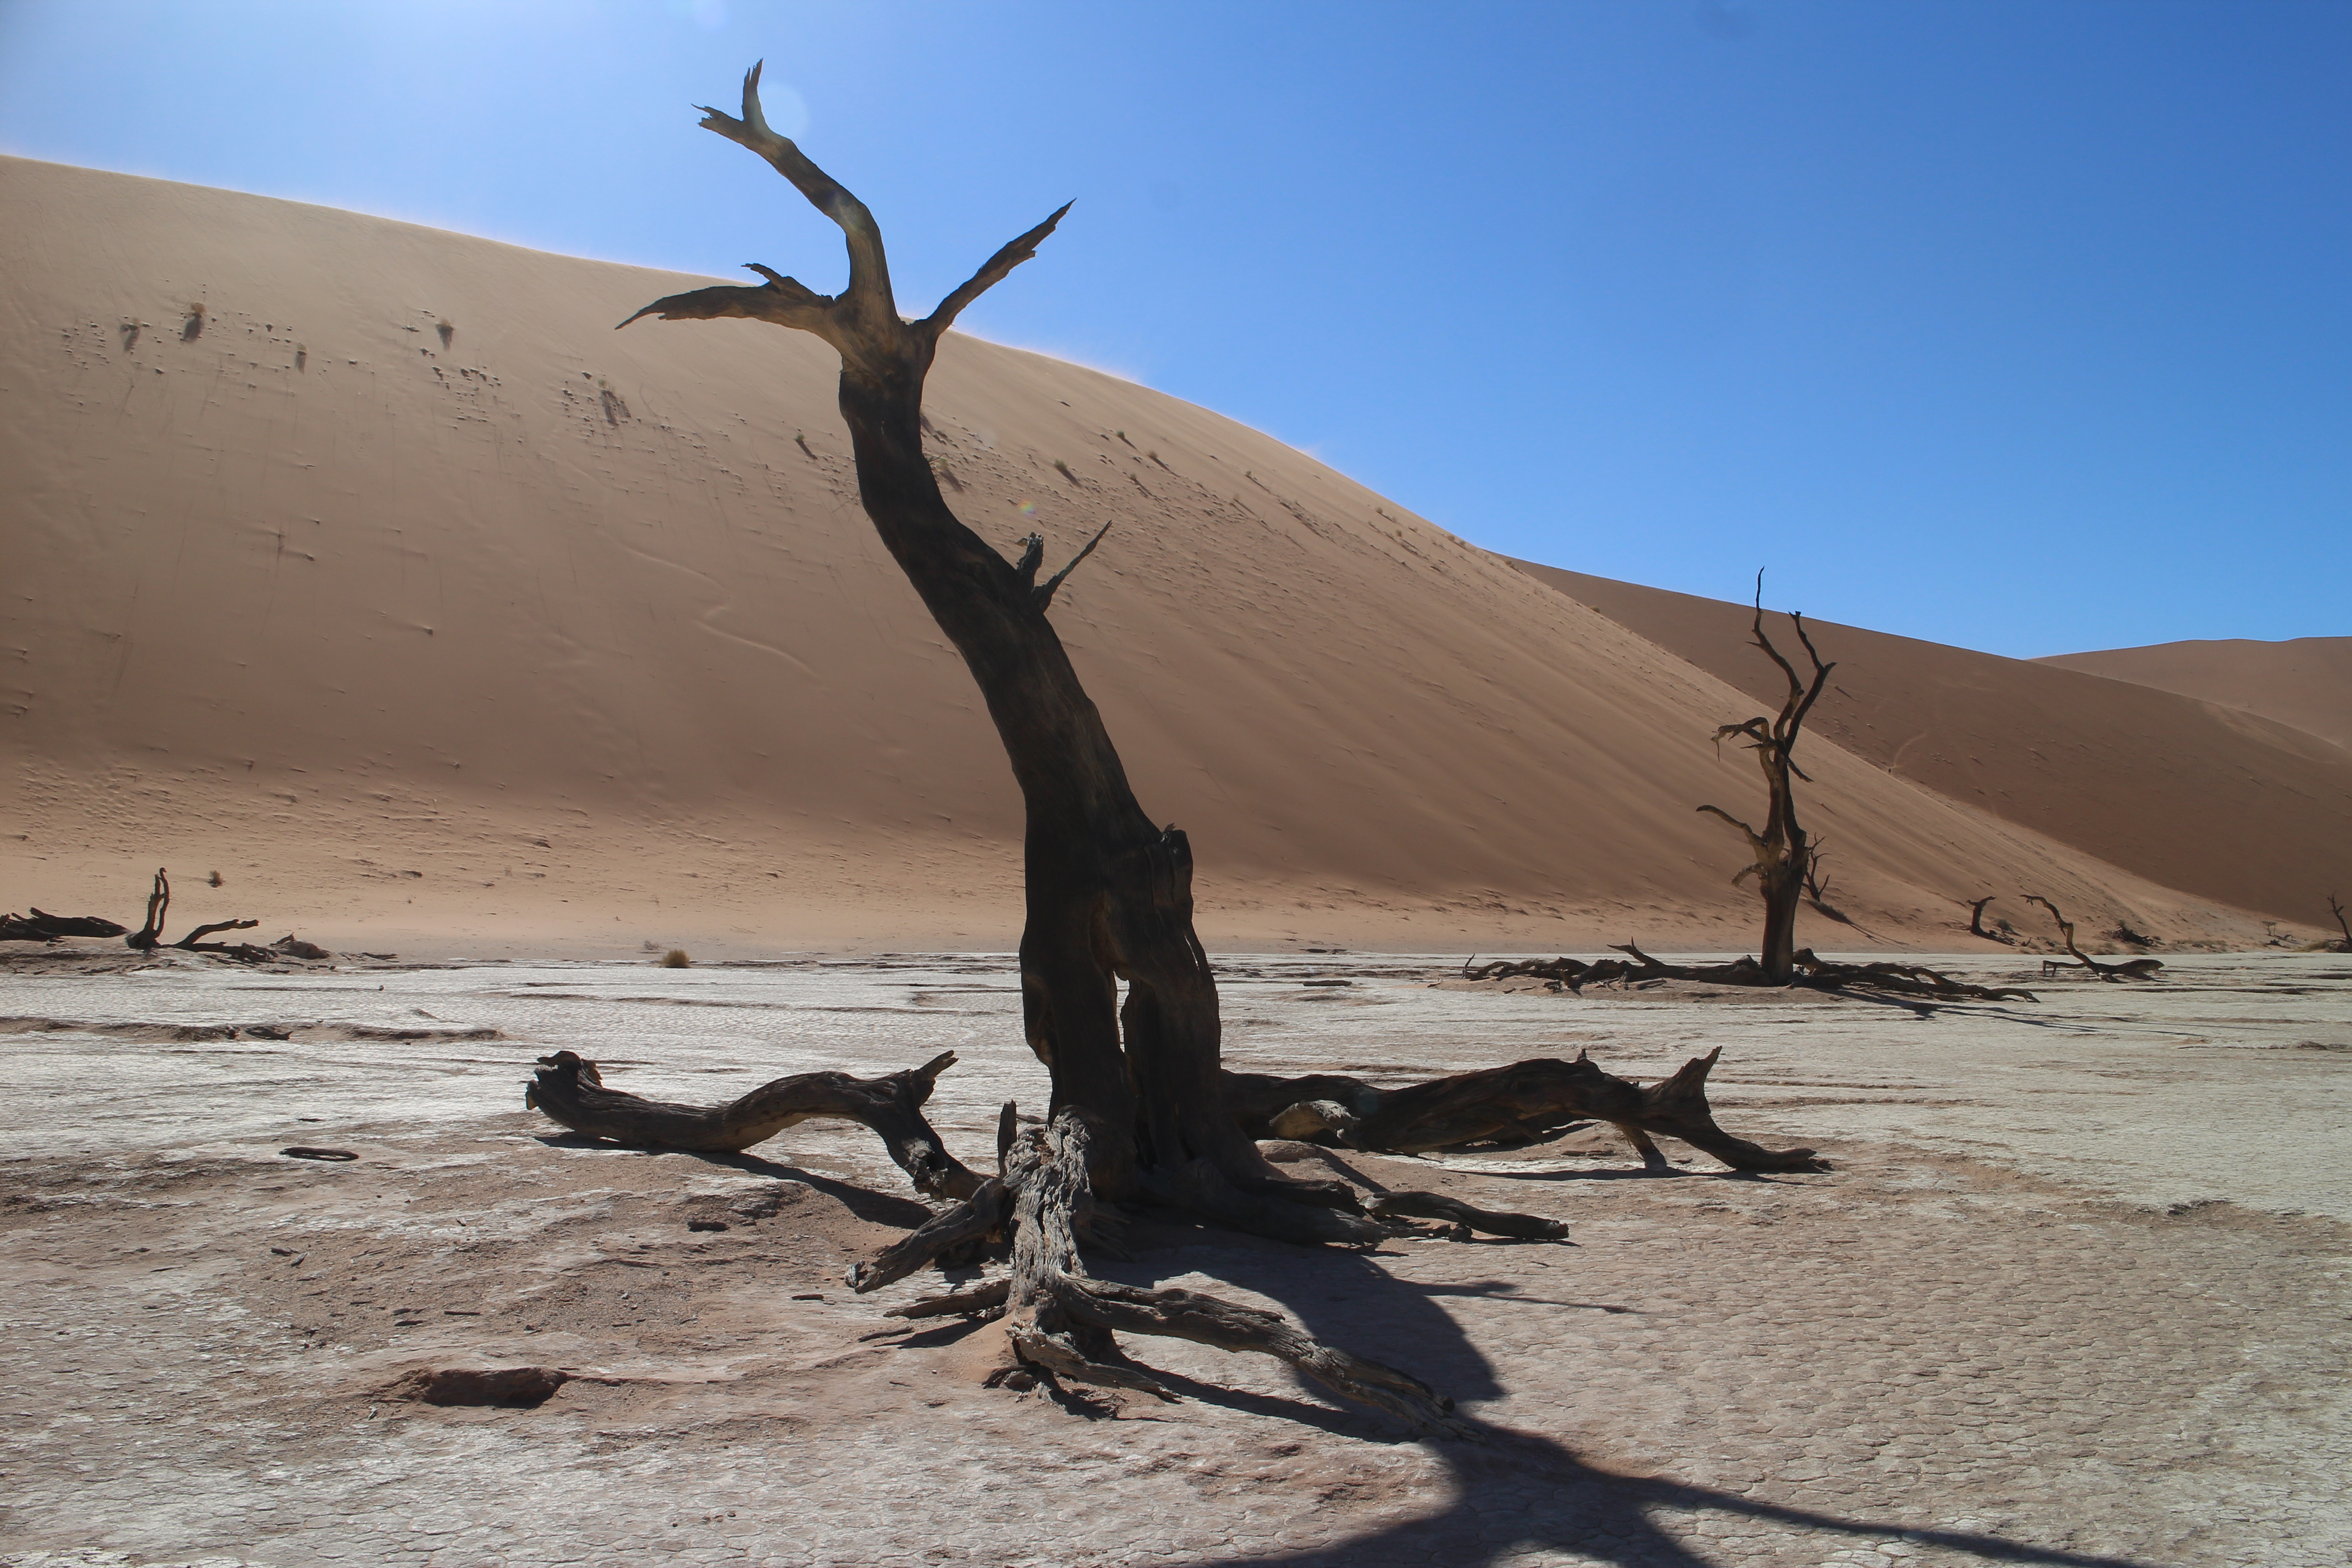 ナミビア・ナミブ砂漠における樹木の枯死